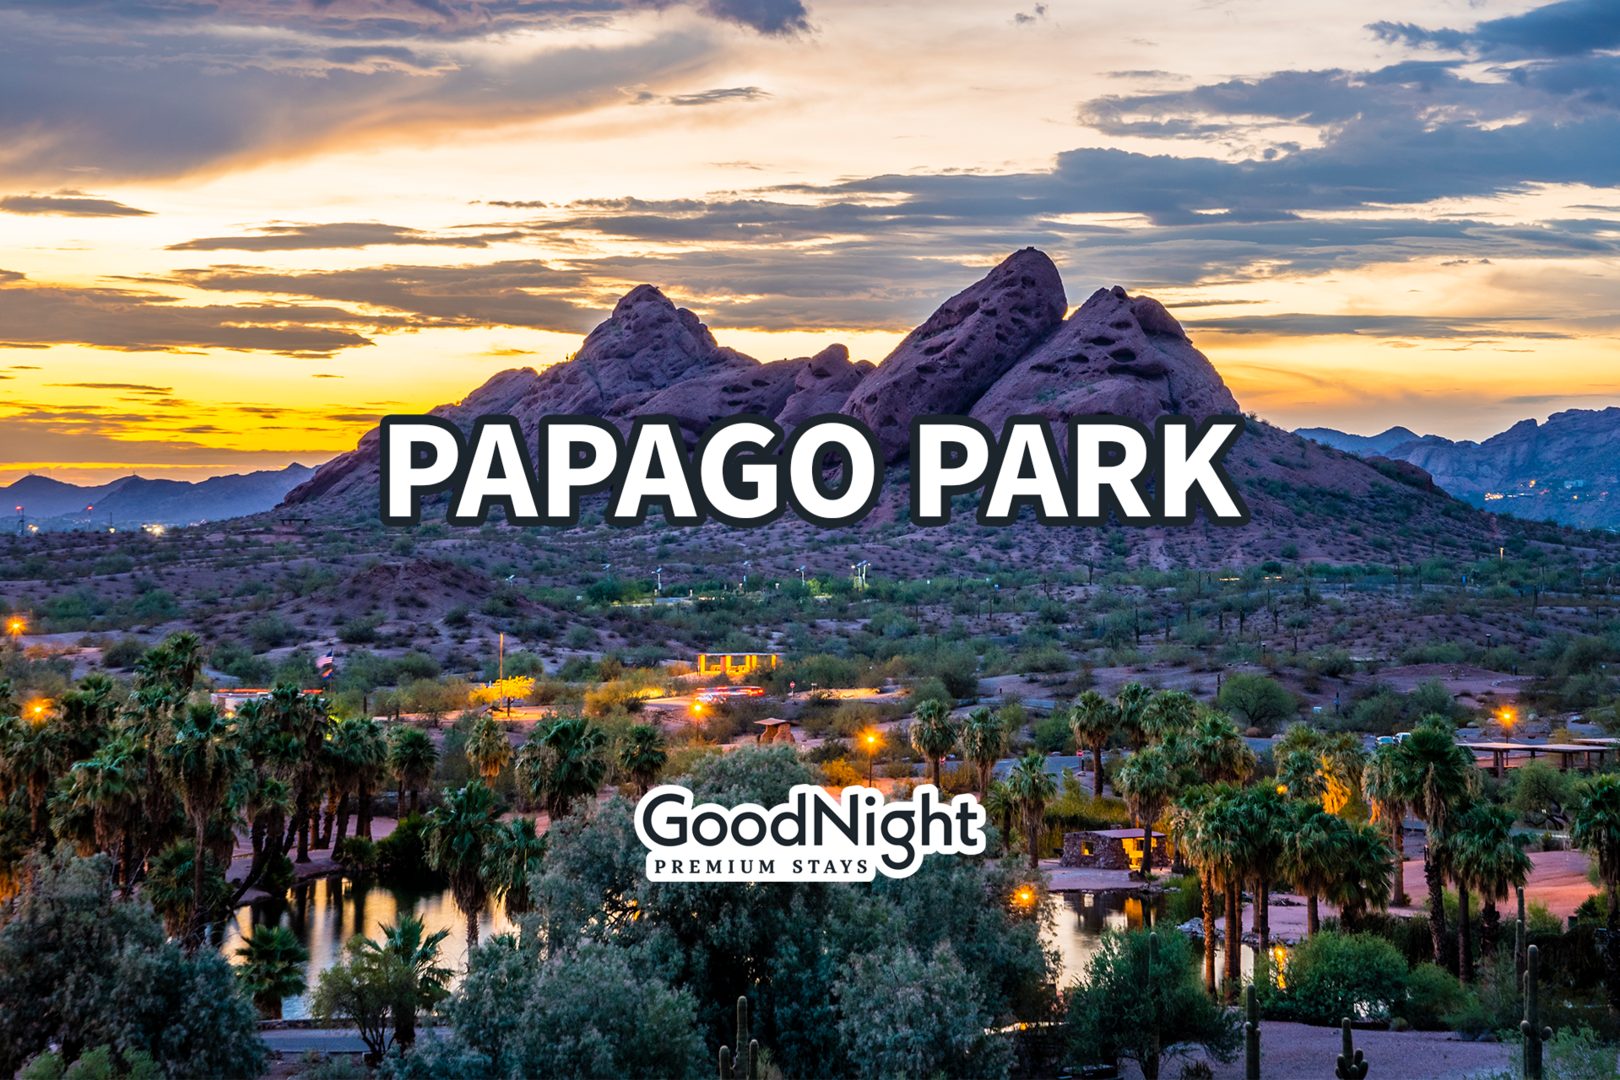 Papago Park: 8 mins